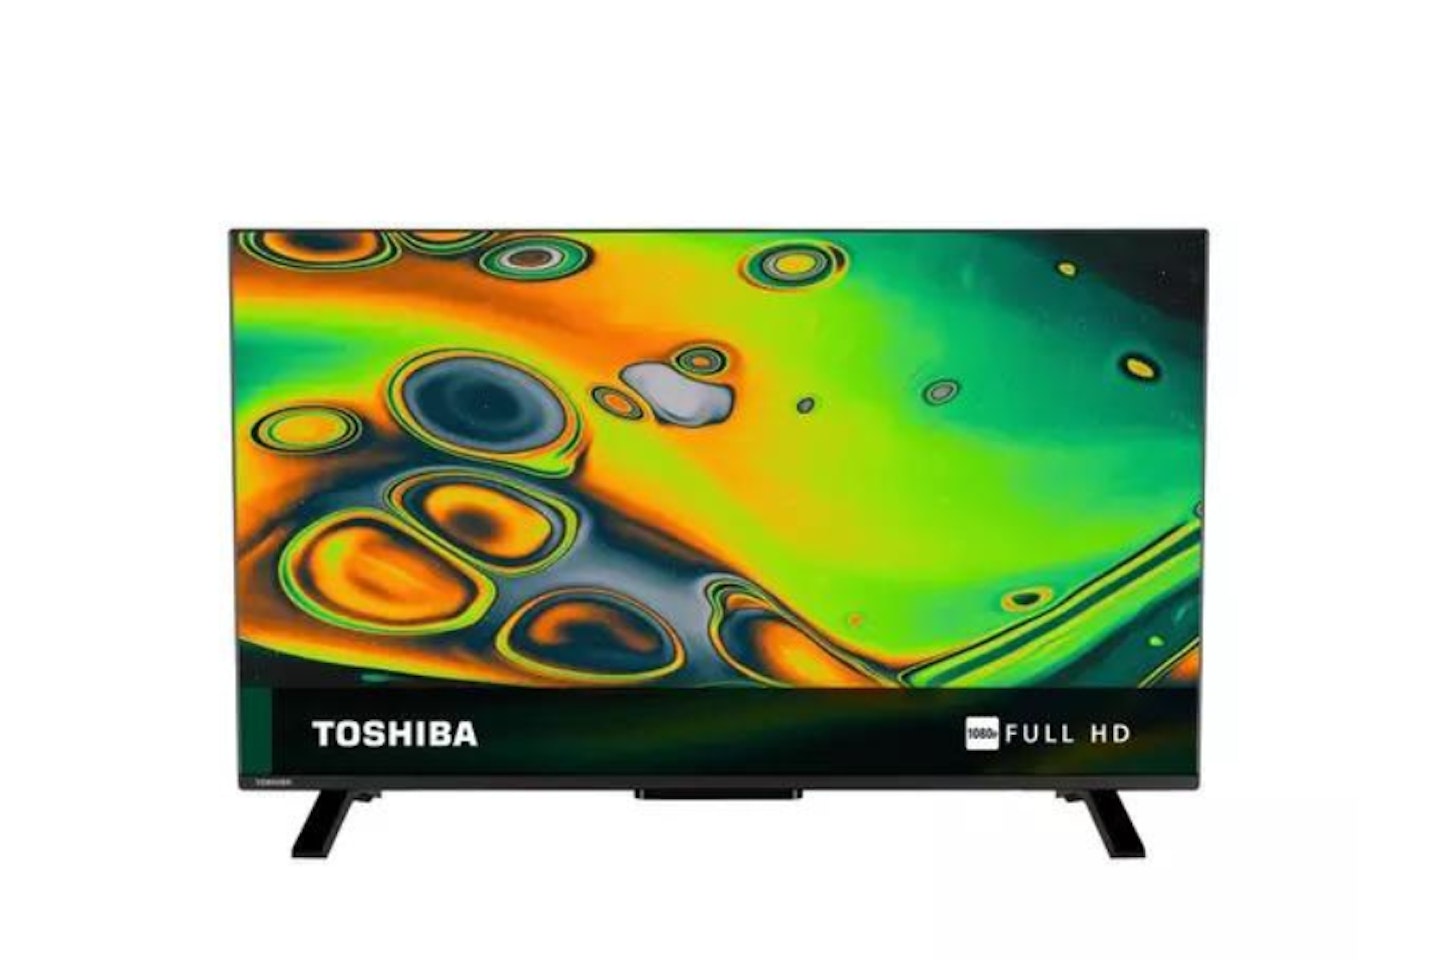 Toshiba 40LV2E63DB 40" Smart Full HD LED TV